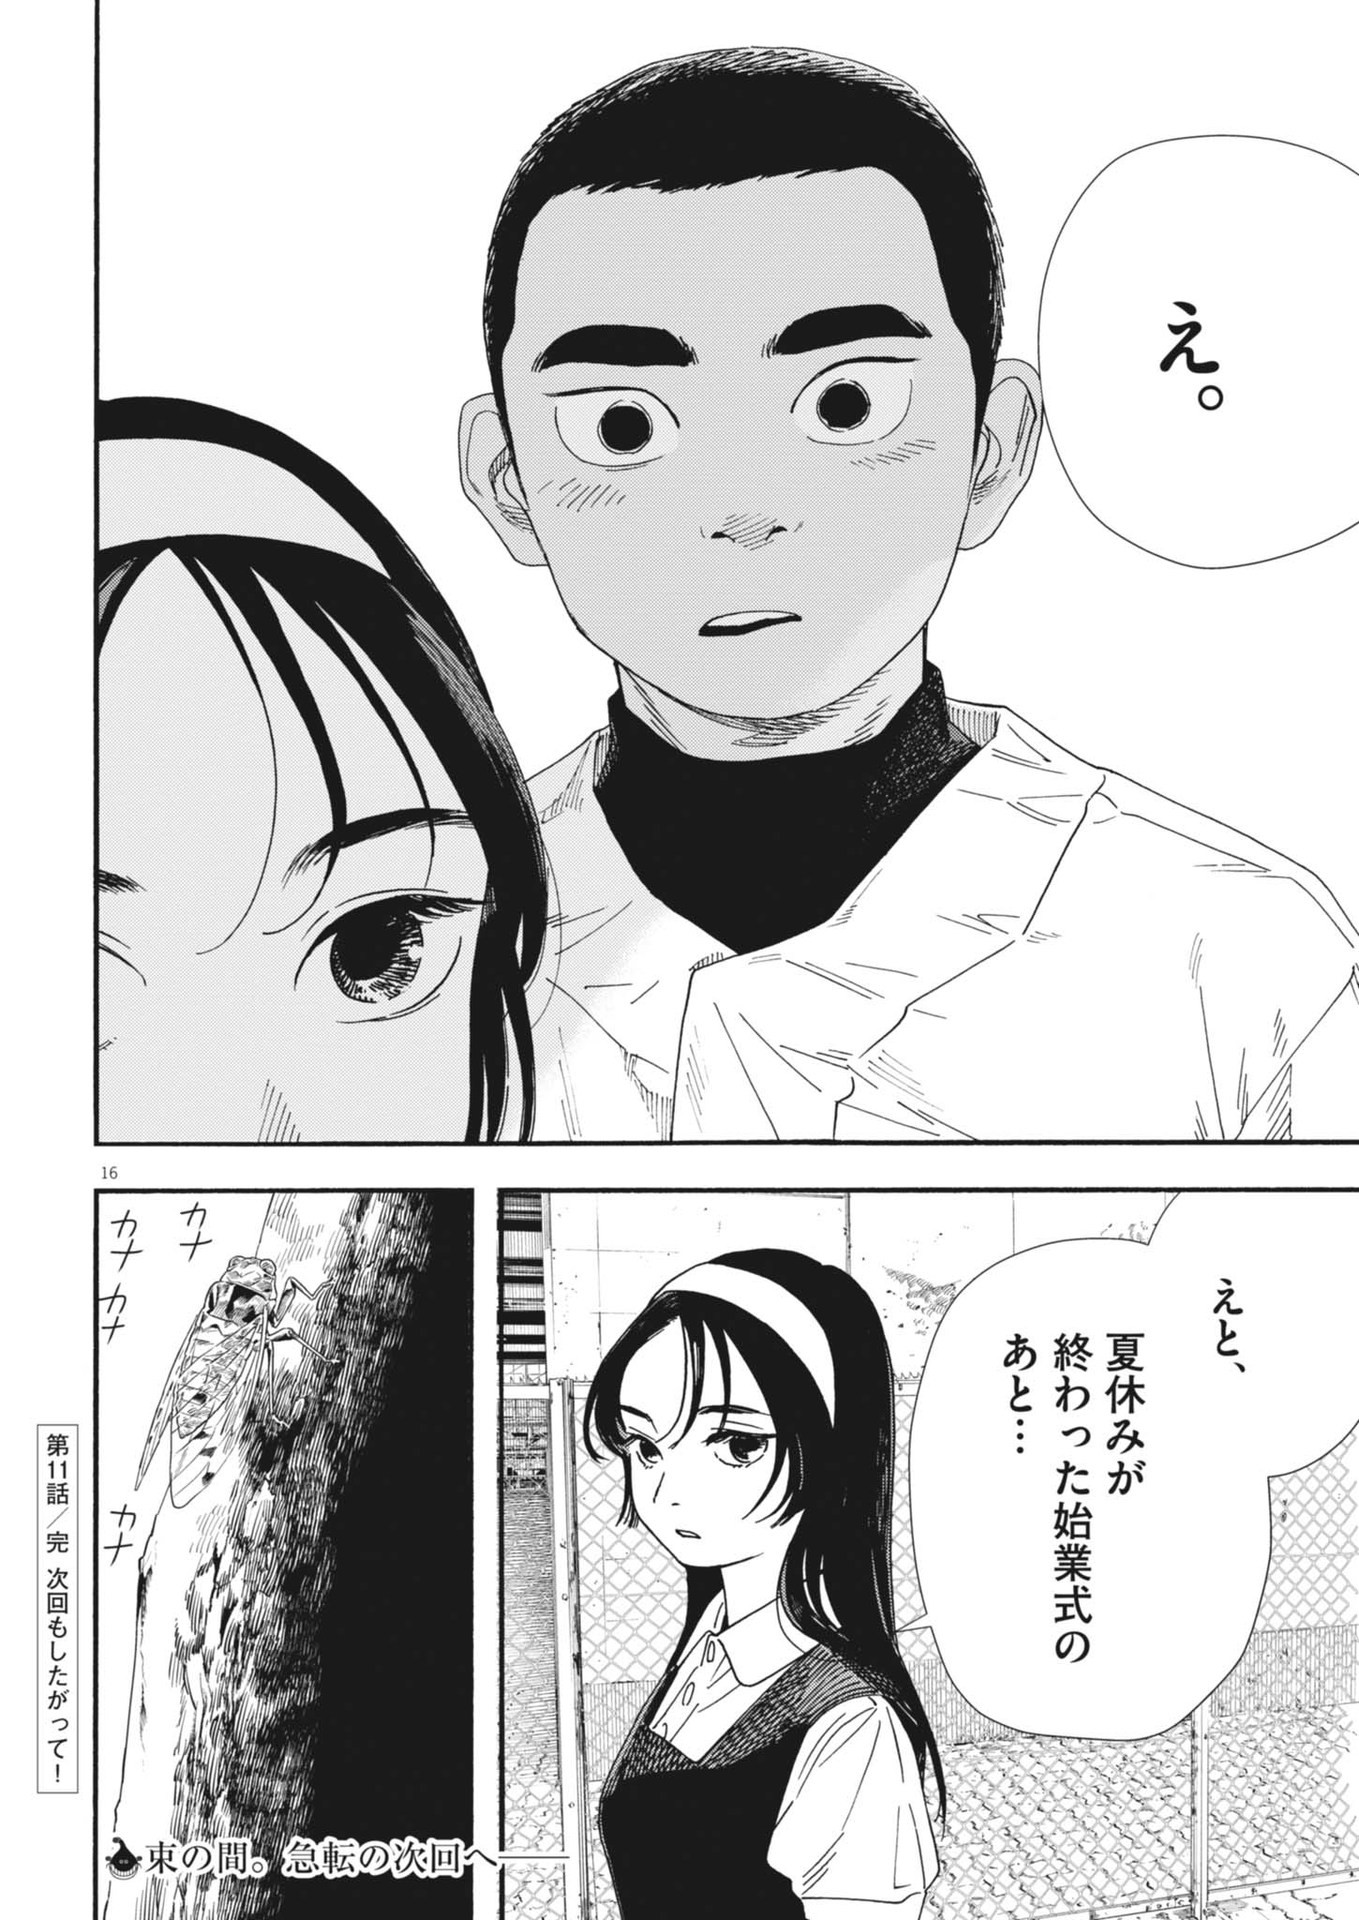 Hoshino-kun, Shitagatte! - Chapter 11 - Page 16